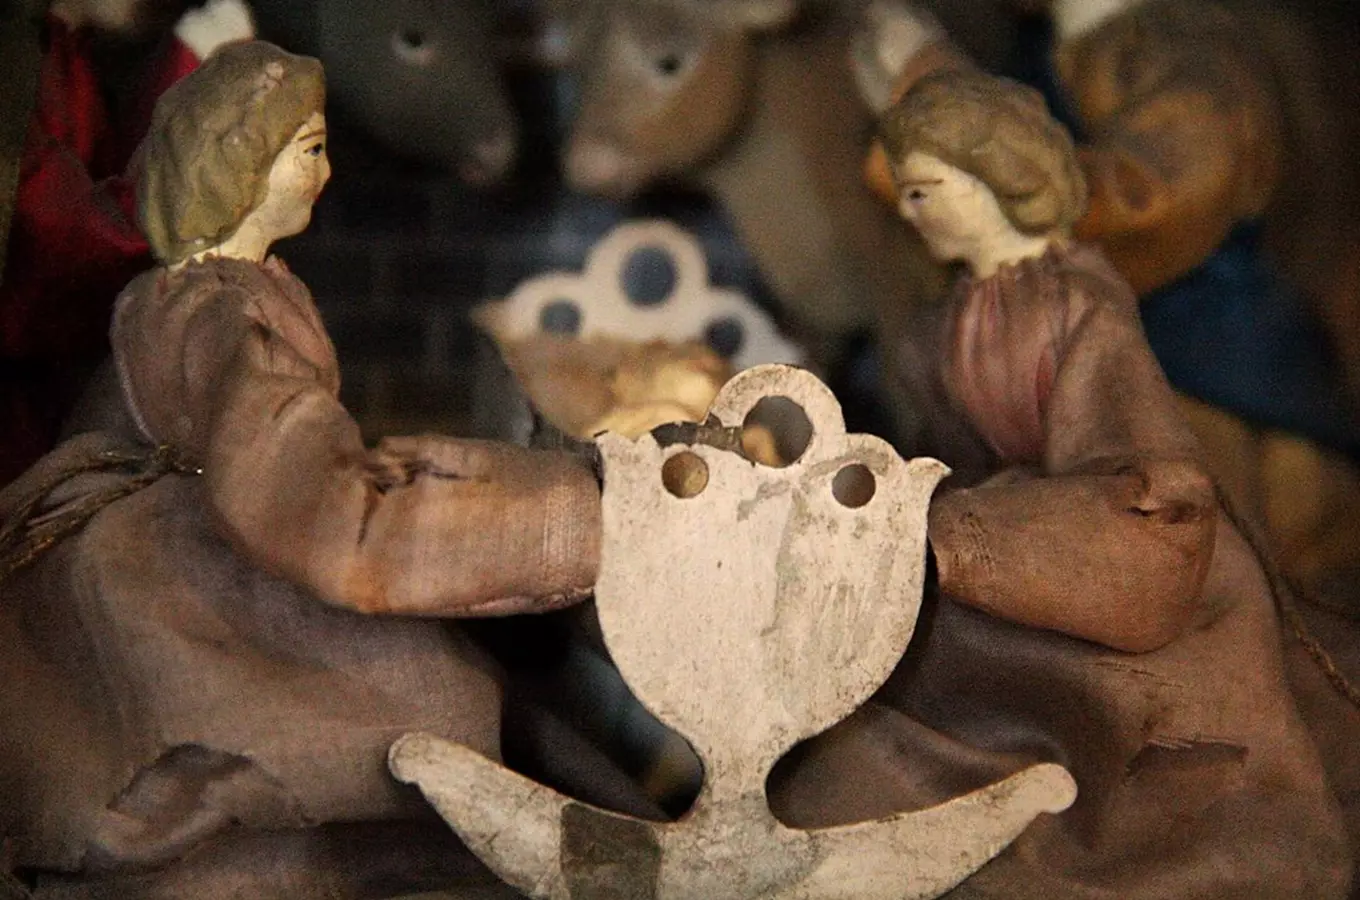 Metelkův mechanický betlém oslavuje 110 let, najdete ho v Jilemnici